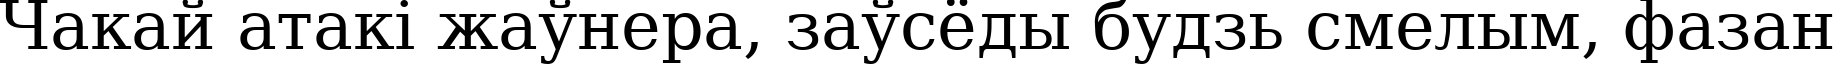 Пример написания шрифтом DejaVu Serif текста на белорусском